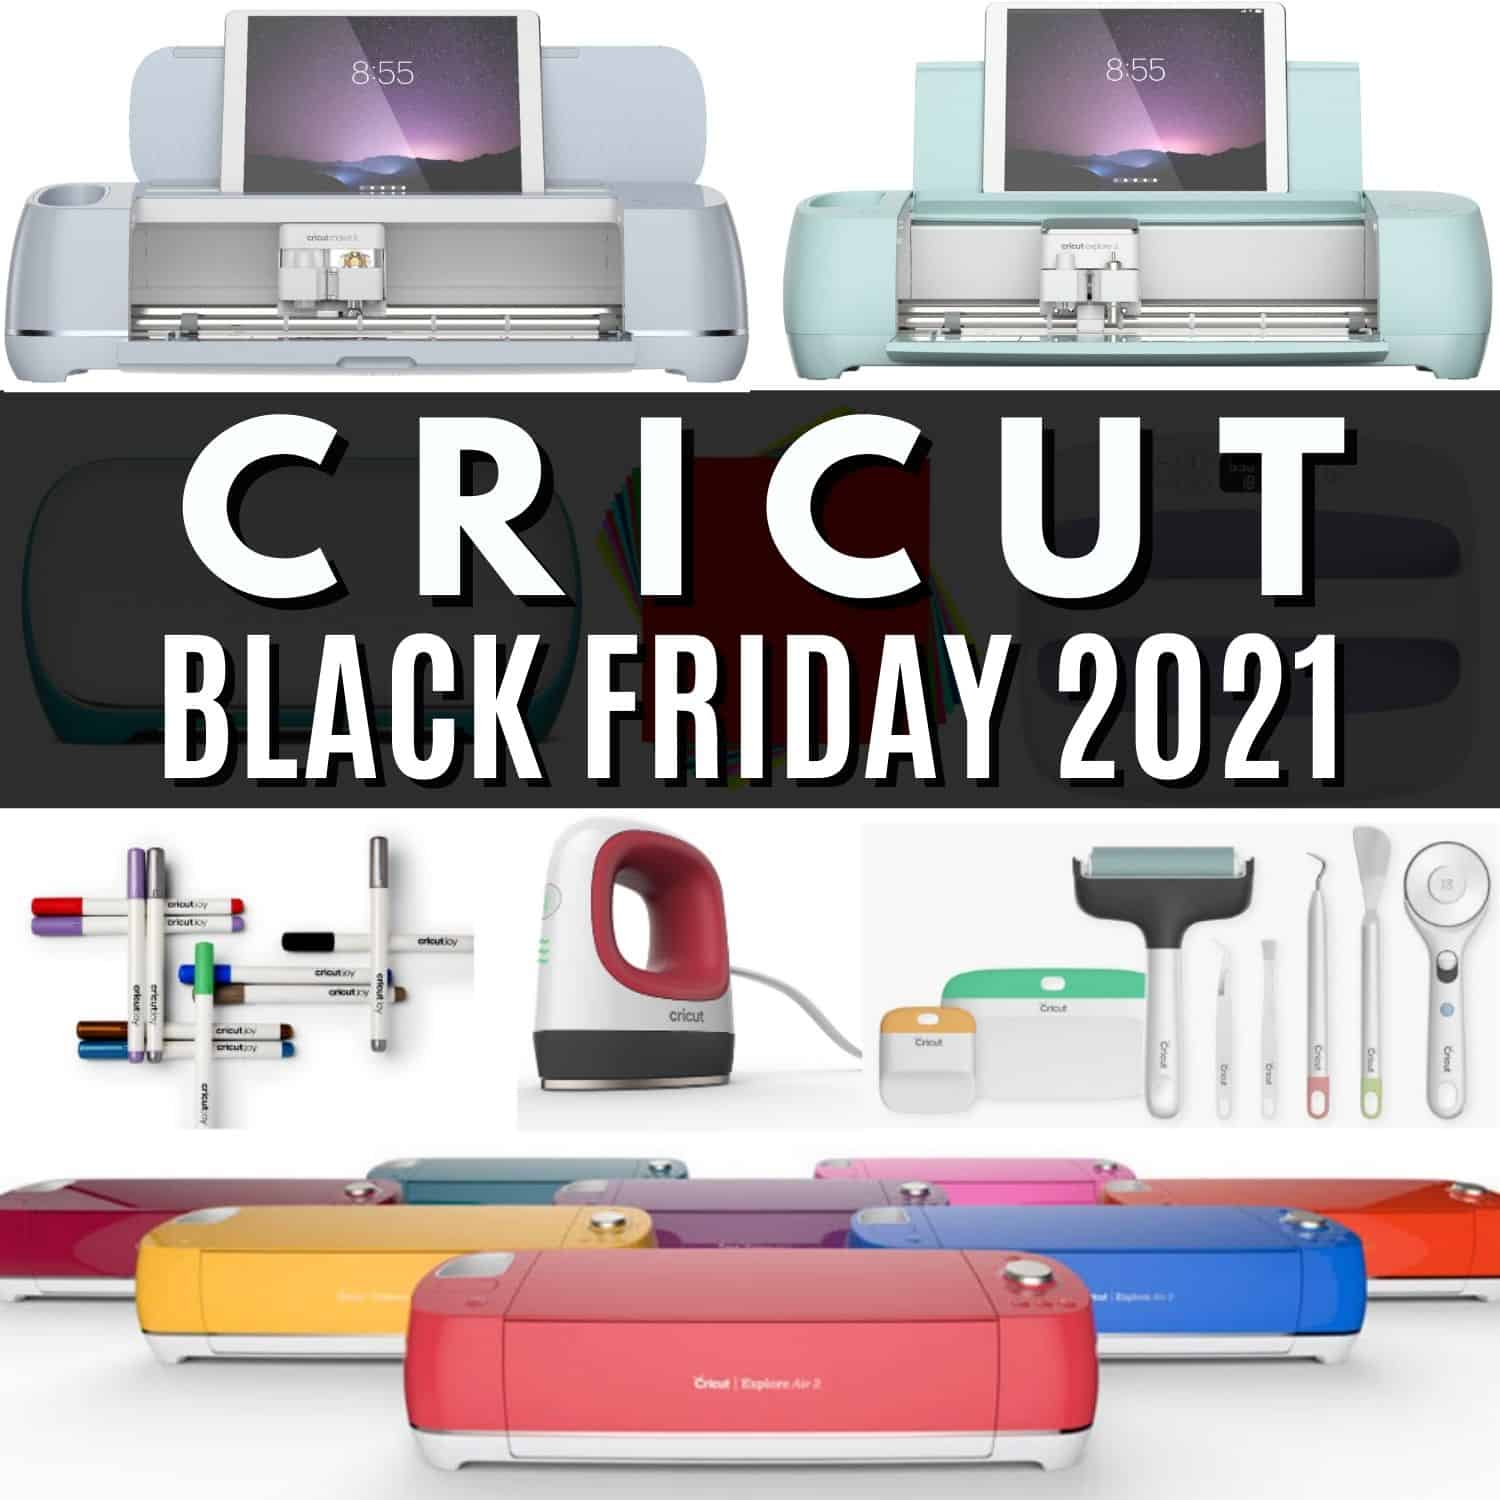 Cricut Black Friday 2021 Deals